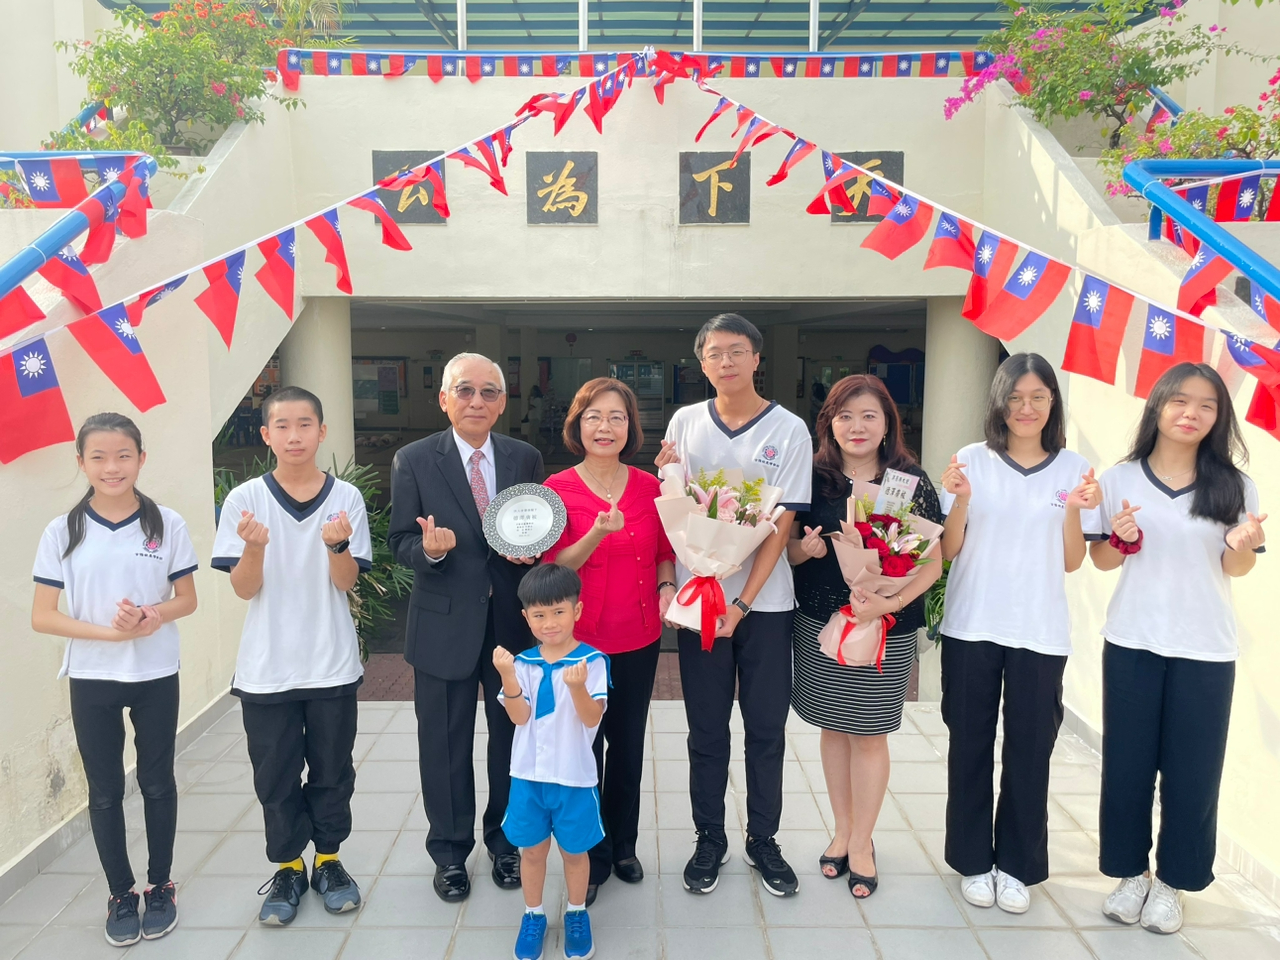 吉隆坡臺灣學校董事長杜書垚代表學校致贈感謝狀予洪大使